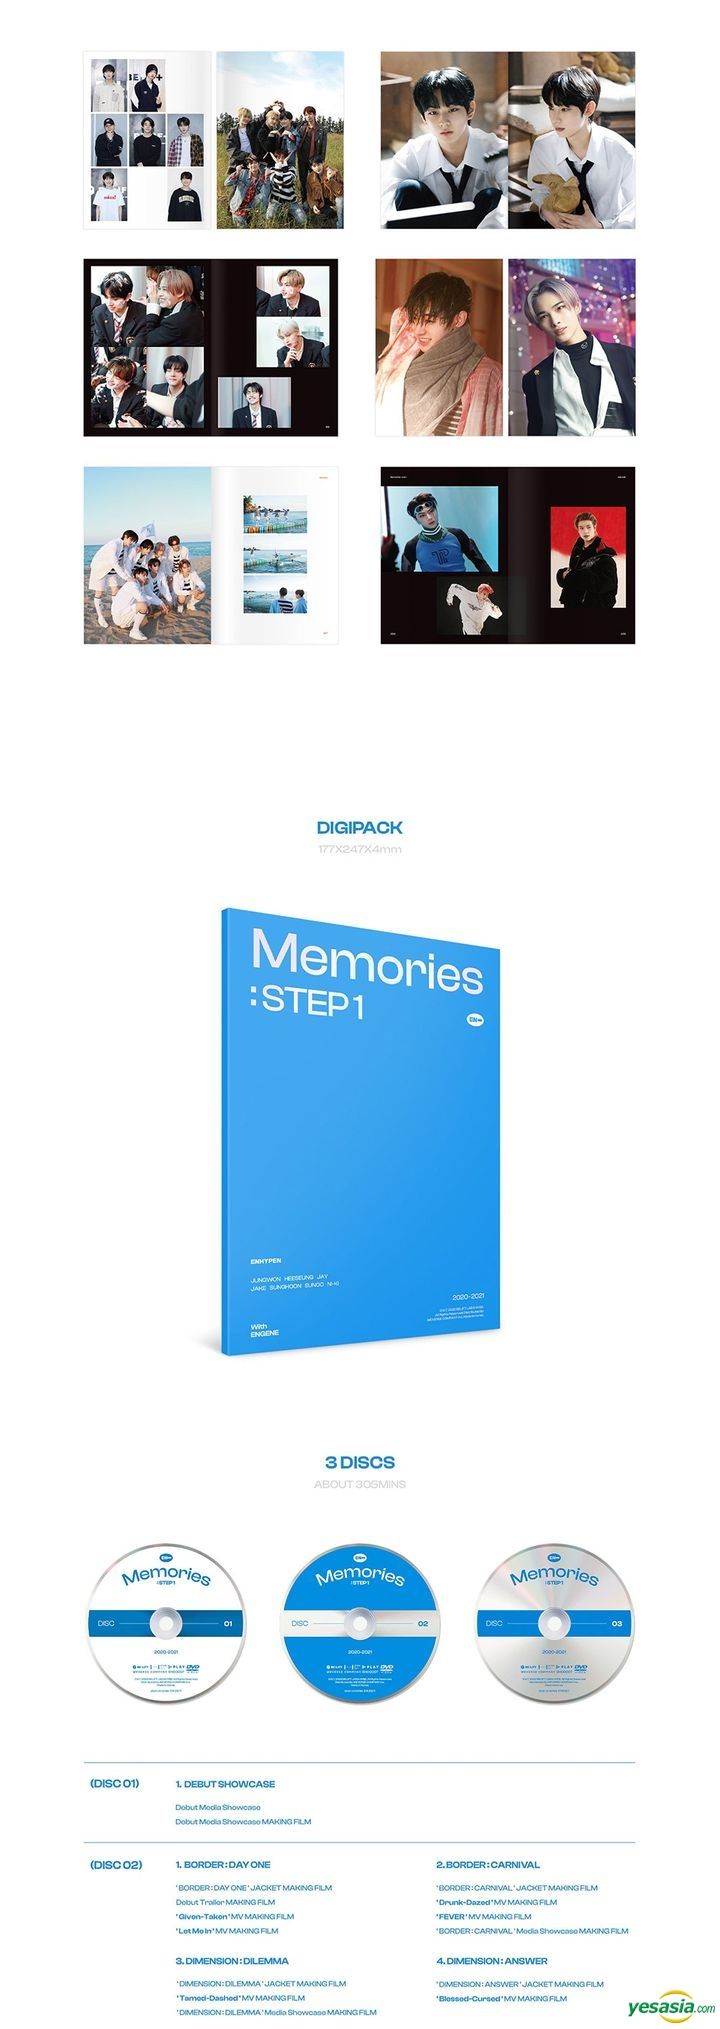 YESASIA: ENHYPEN - Memories : STEP 1 (DVD) DVD - ENHYPEN, BELIFT 